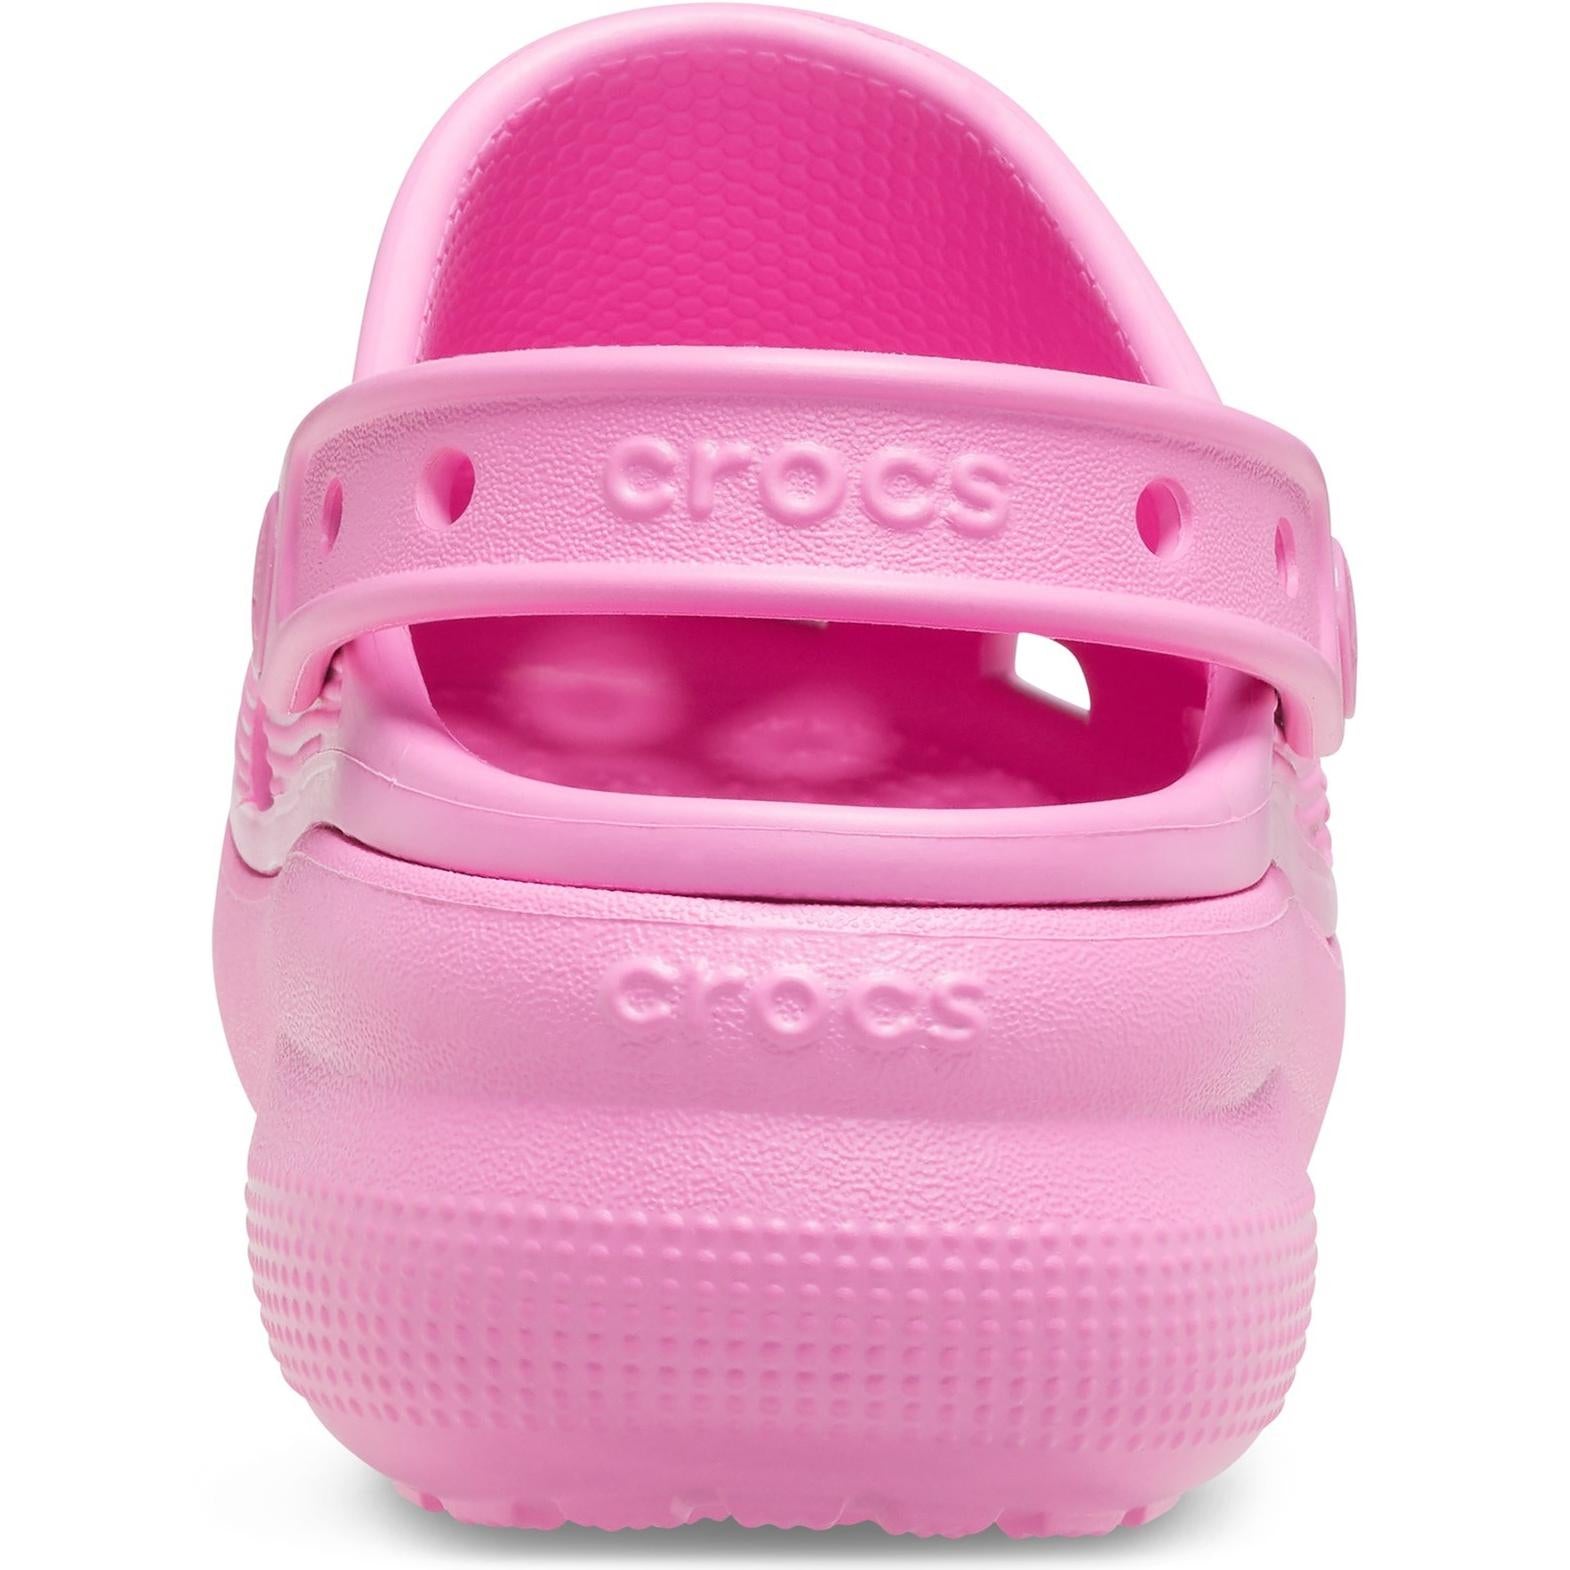 Crocs Classic Crocs Cutie Clog Sandals